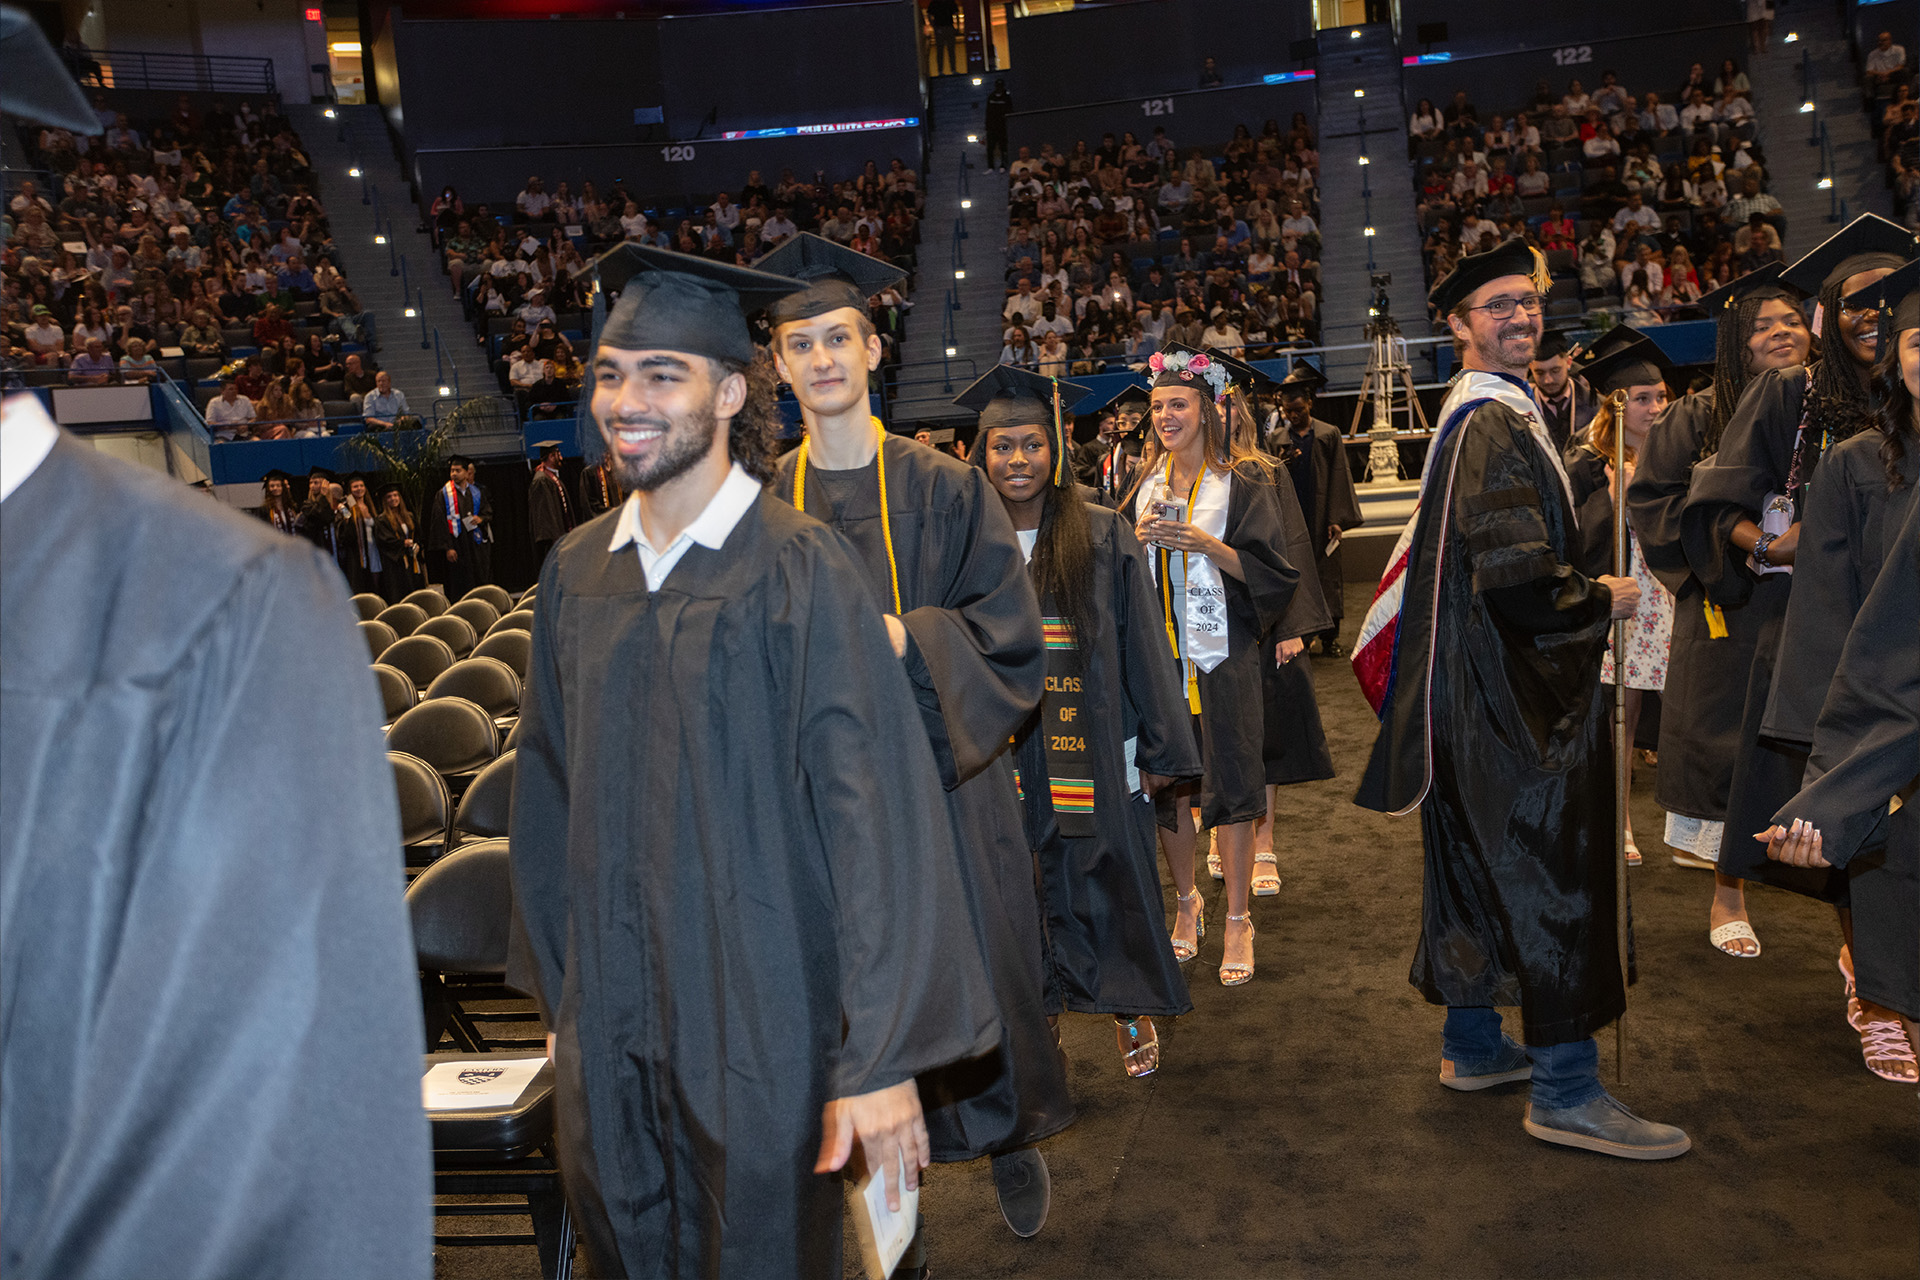 Graduates walking down the aisle to their seats